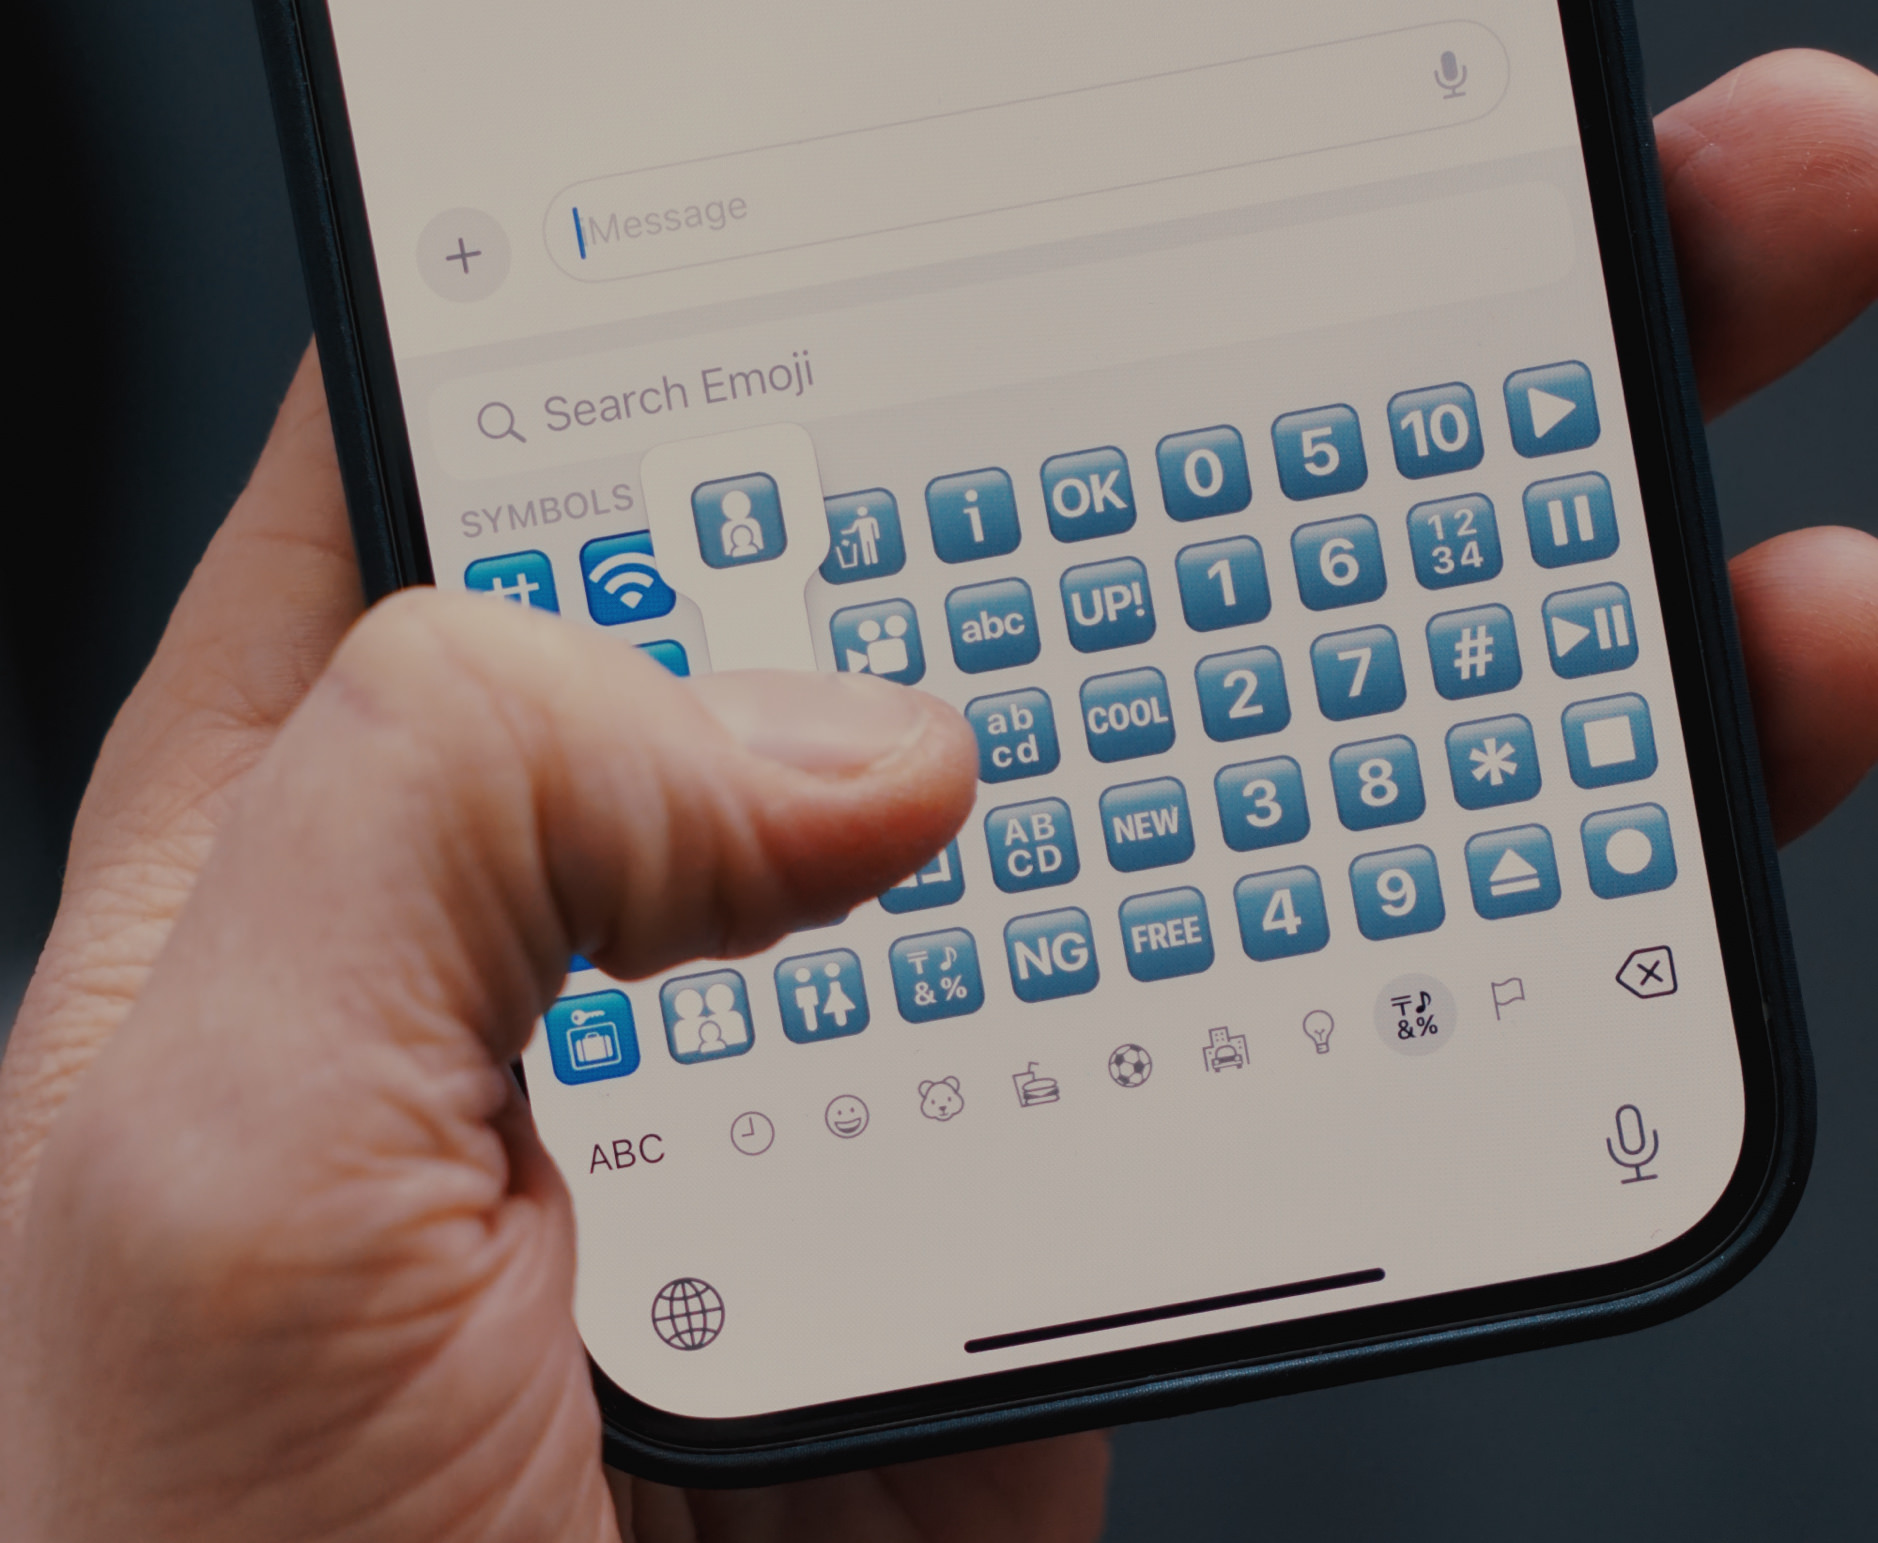 Das Bild zeigt eine Nahaufnahme einer Hand, die ein Smartphone hält, auf dessen Bildschirm eine Emoji-Tastatur zu sehen ist. Der Daumen der Hand ist dabei, ein Emoji auszuwählen.